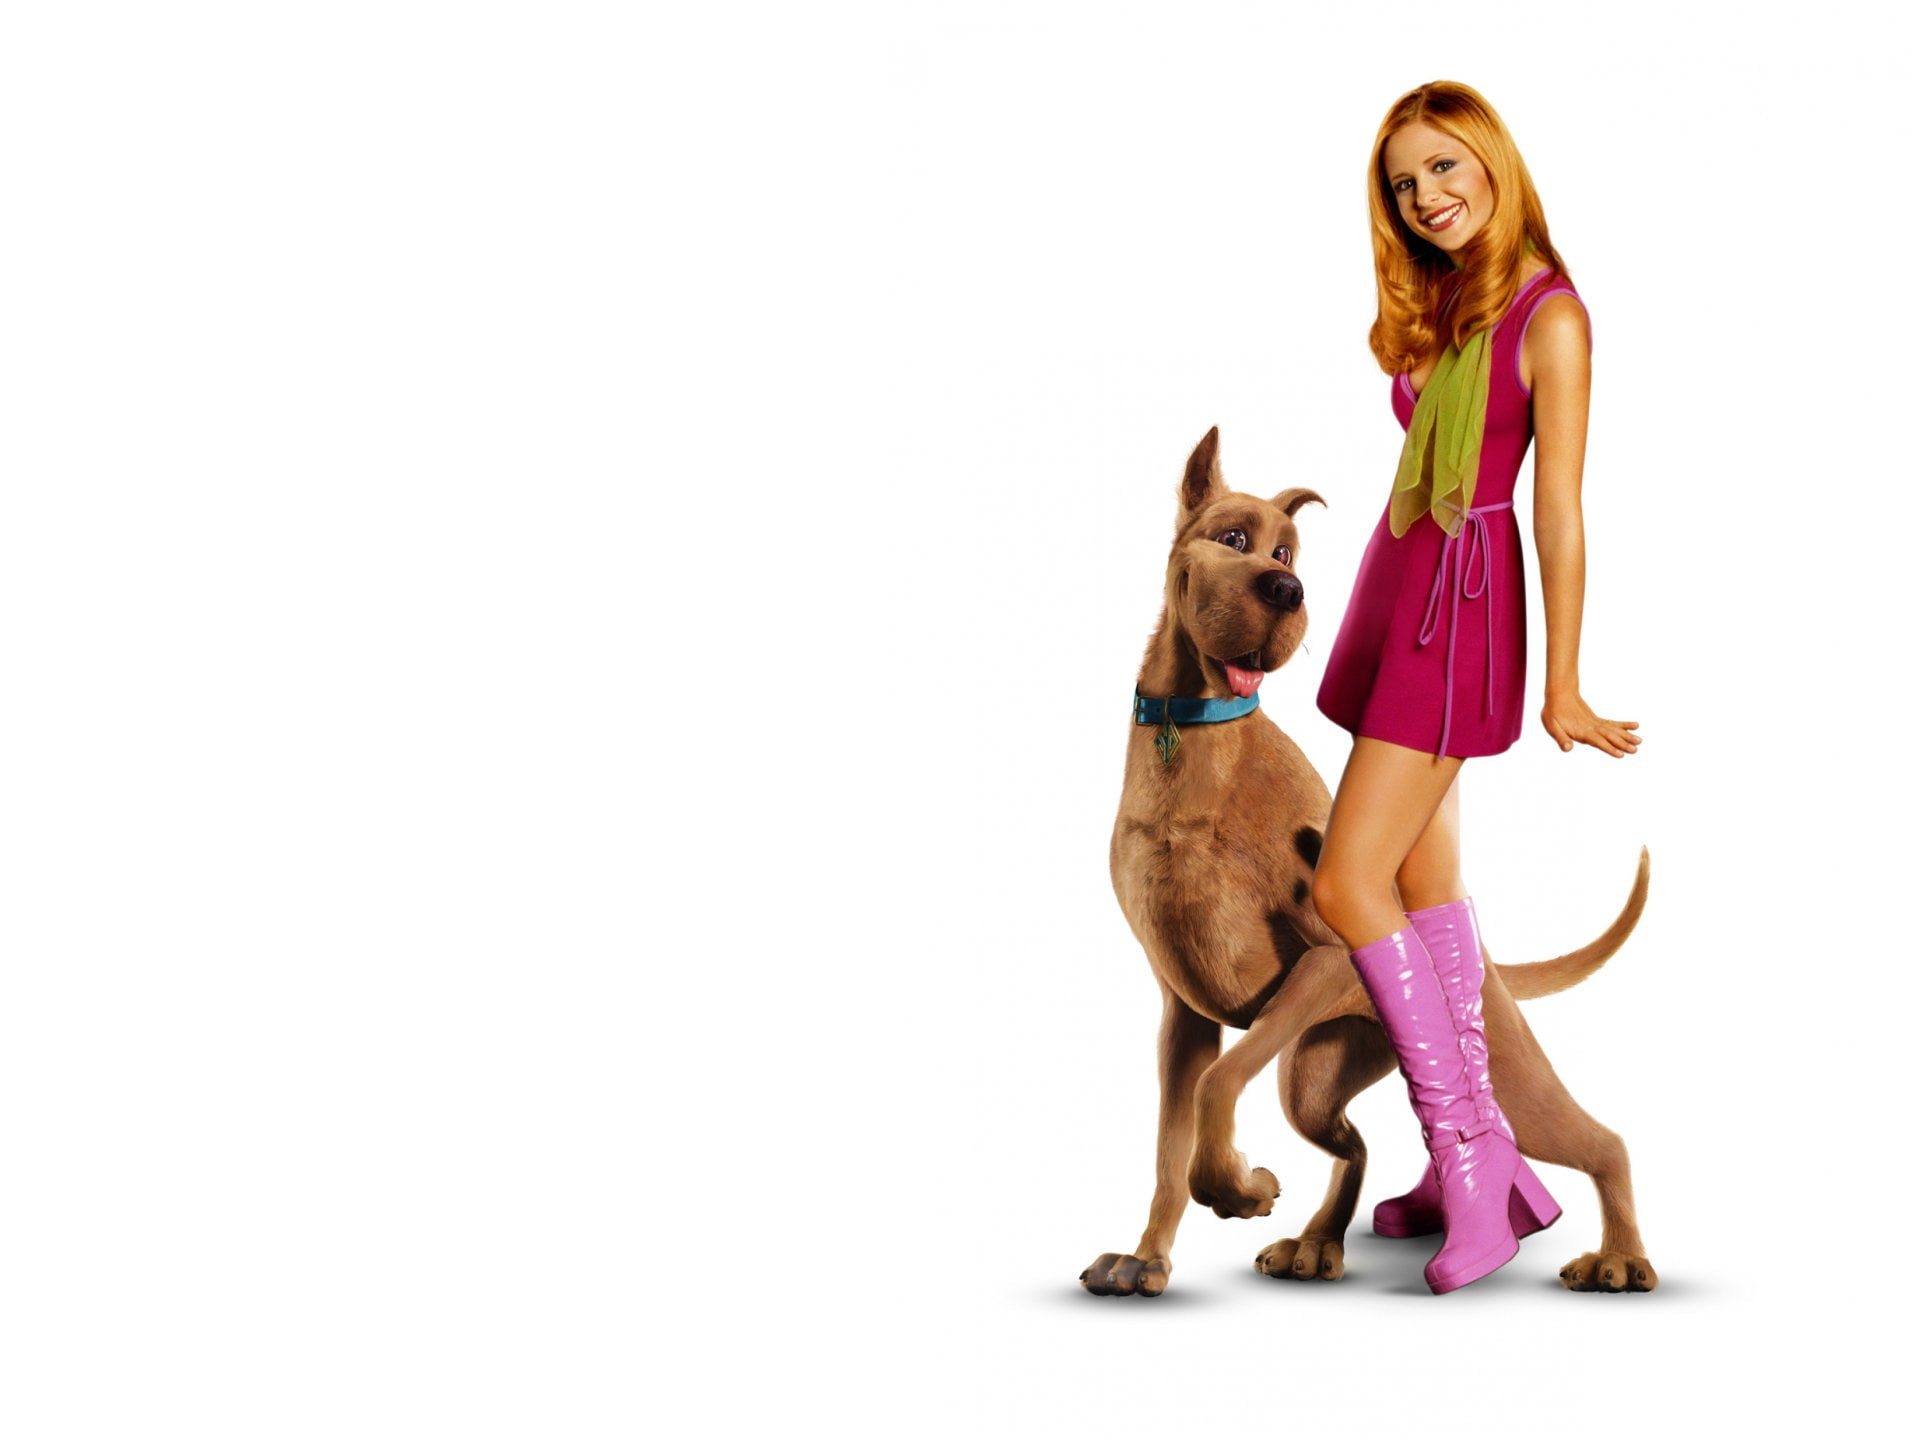 Movie, Scooby-Doo, Sarah Michelle Gellar